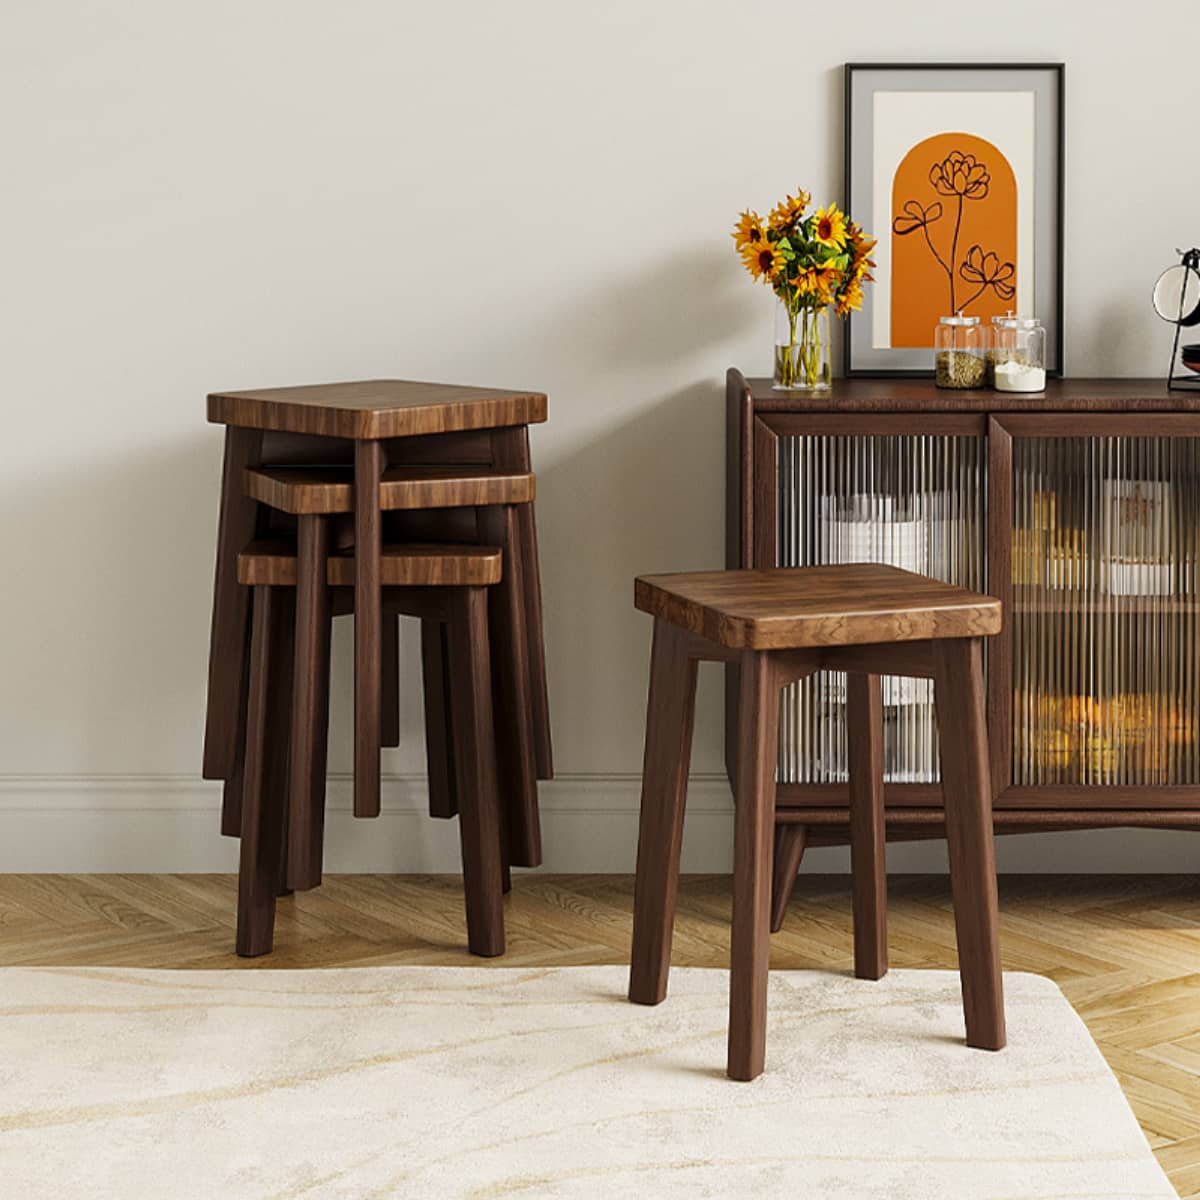 实木餐椅家用椅子简约餐凳出租房用餐桌凳子椅子小户型中古风家具